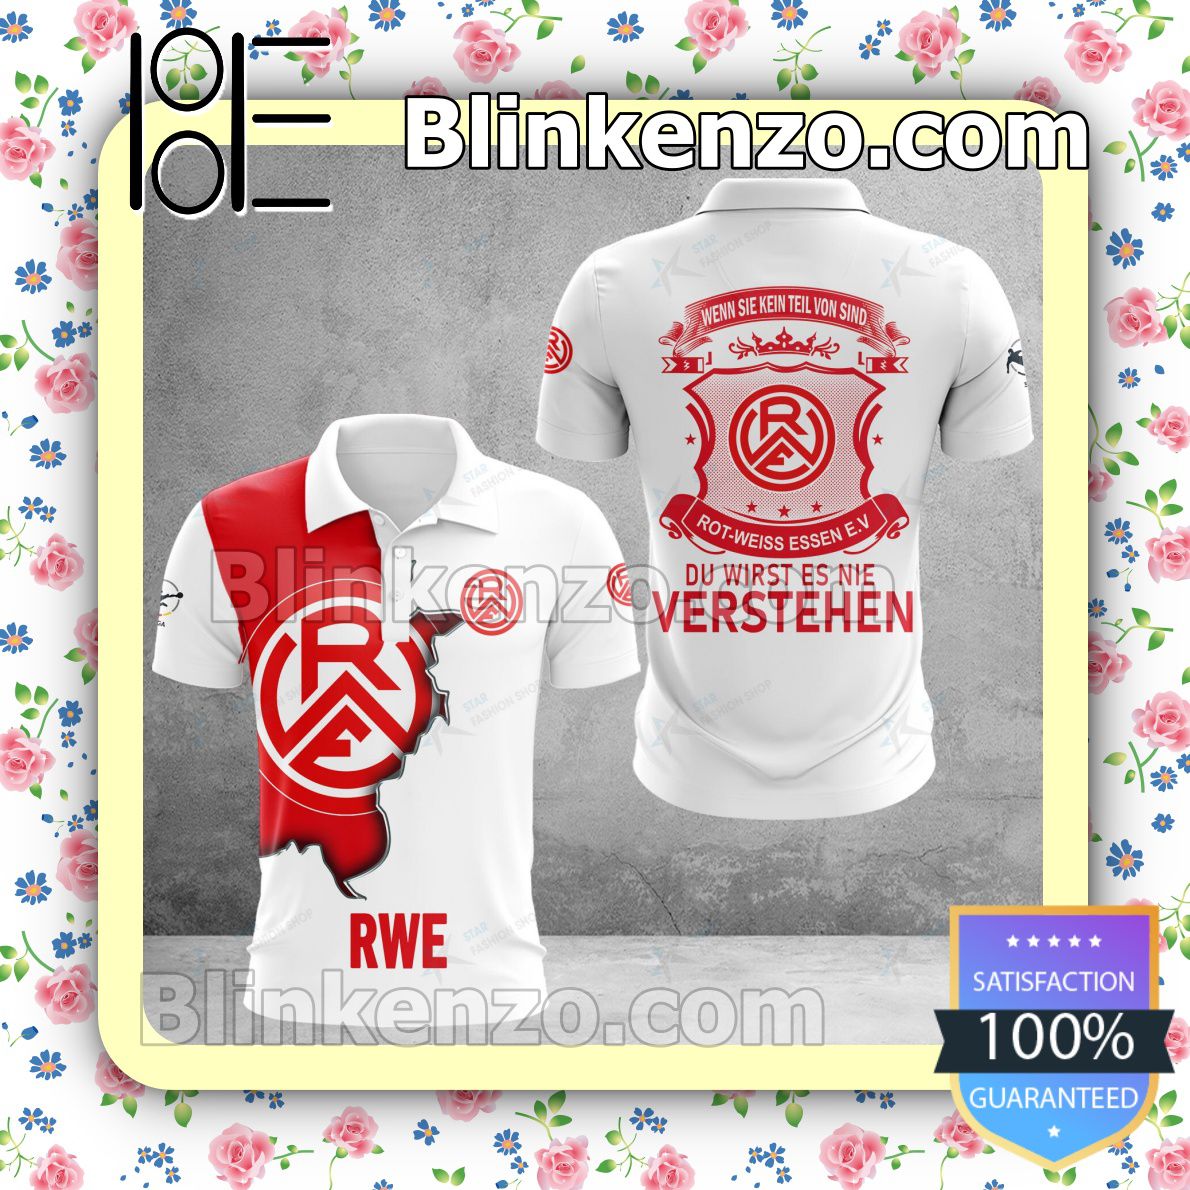 Rot-Weiss Essen e.V T-shirt, Christmas Sweater